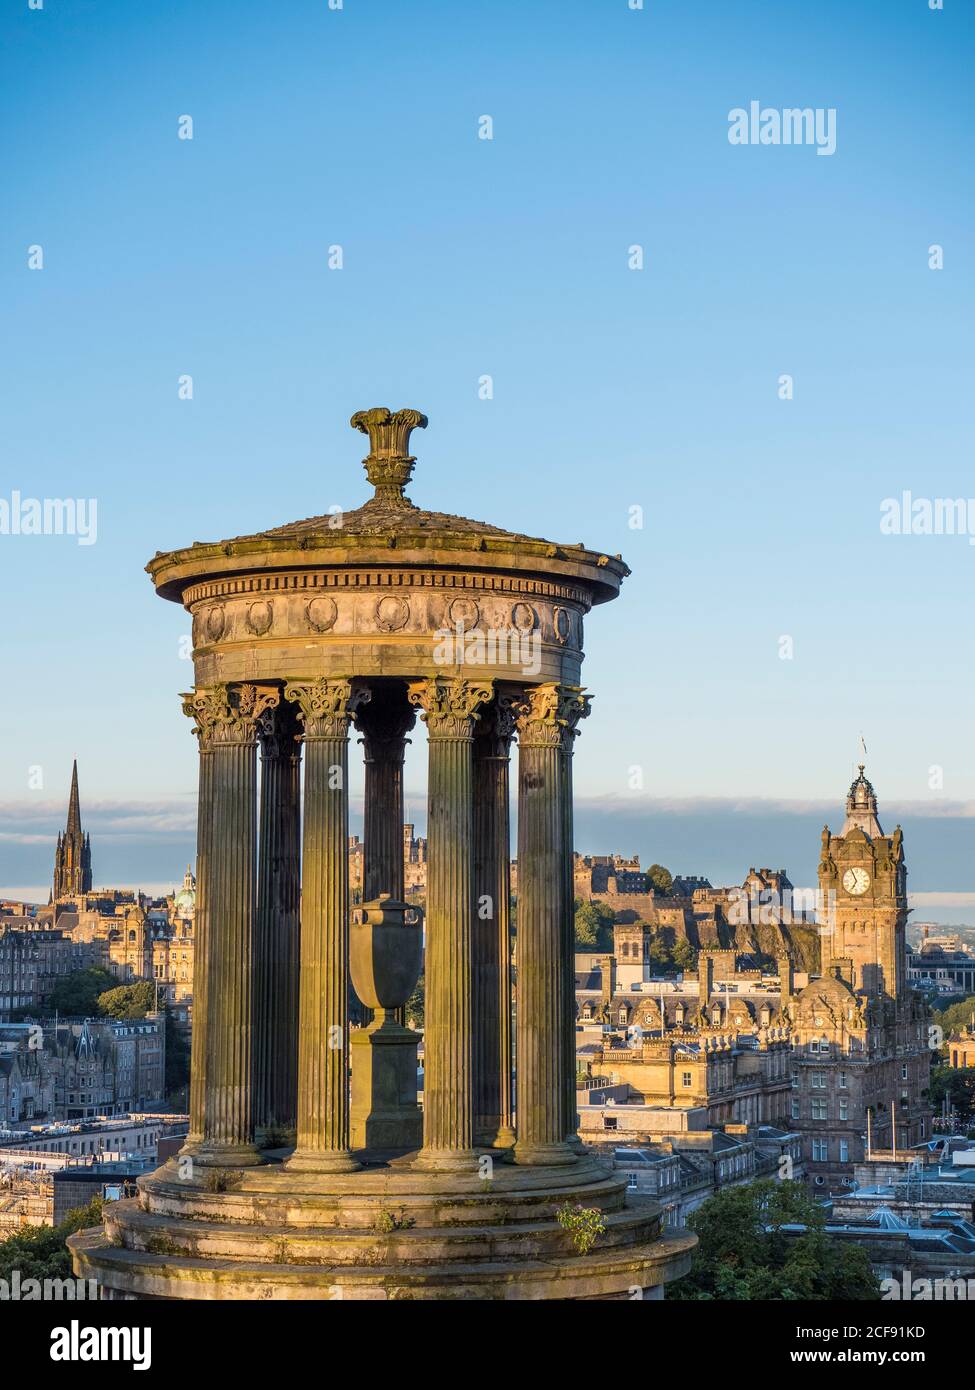 Alba, Vista del Monumento Dugald Stewart, Castello di Edimburgo e l'Hotel Tower of Balmoral, Edimburgo, Scozia, Regno Unito, GB. Foto Stock